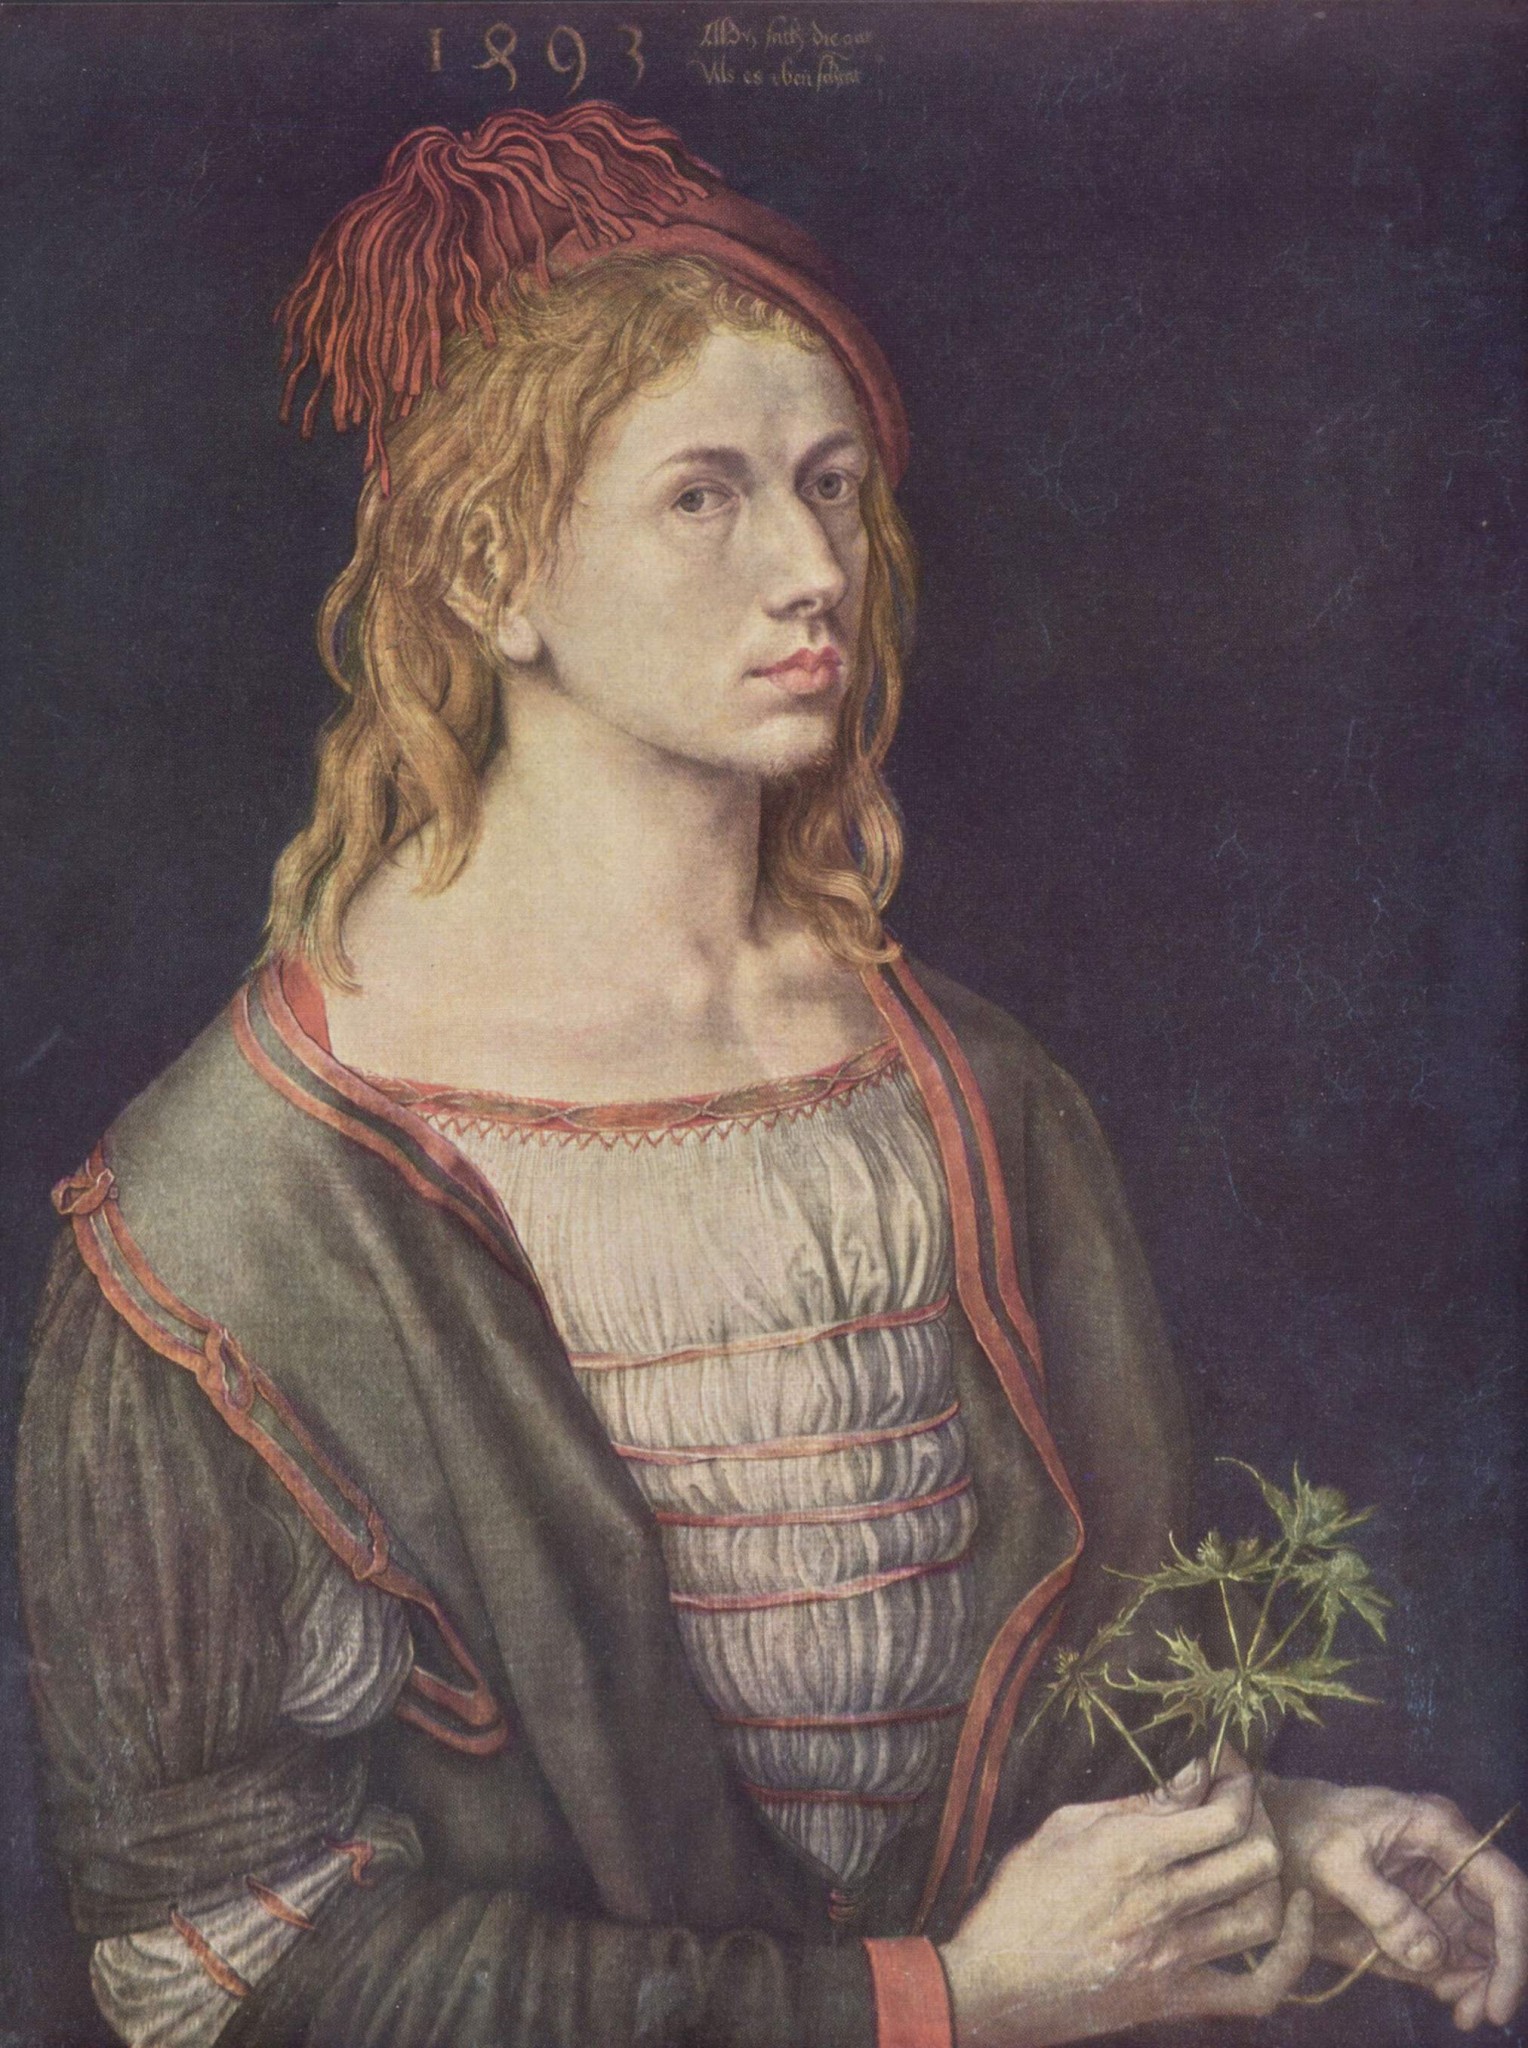 Albrecht Dürer (1493. Автопортрет с остролистом или синеголовником полевым. 22 года)